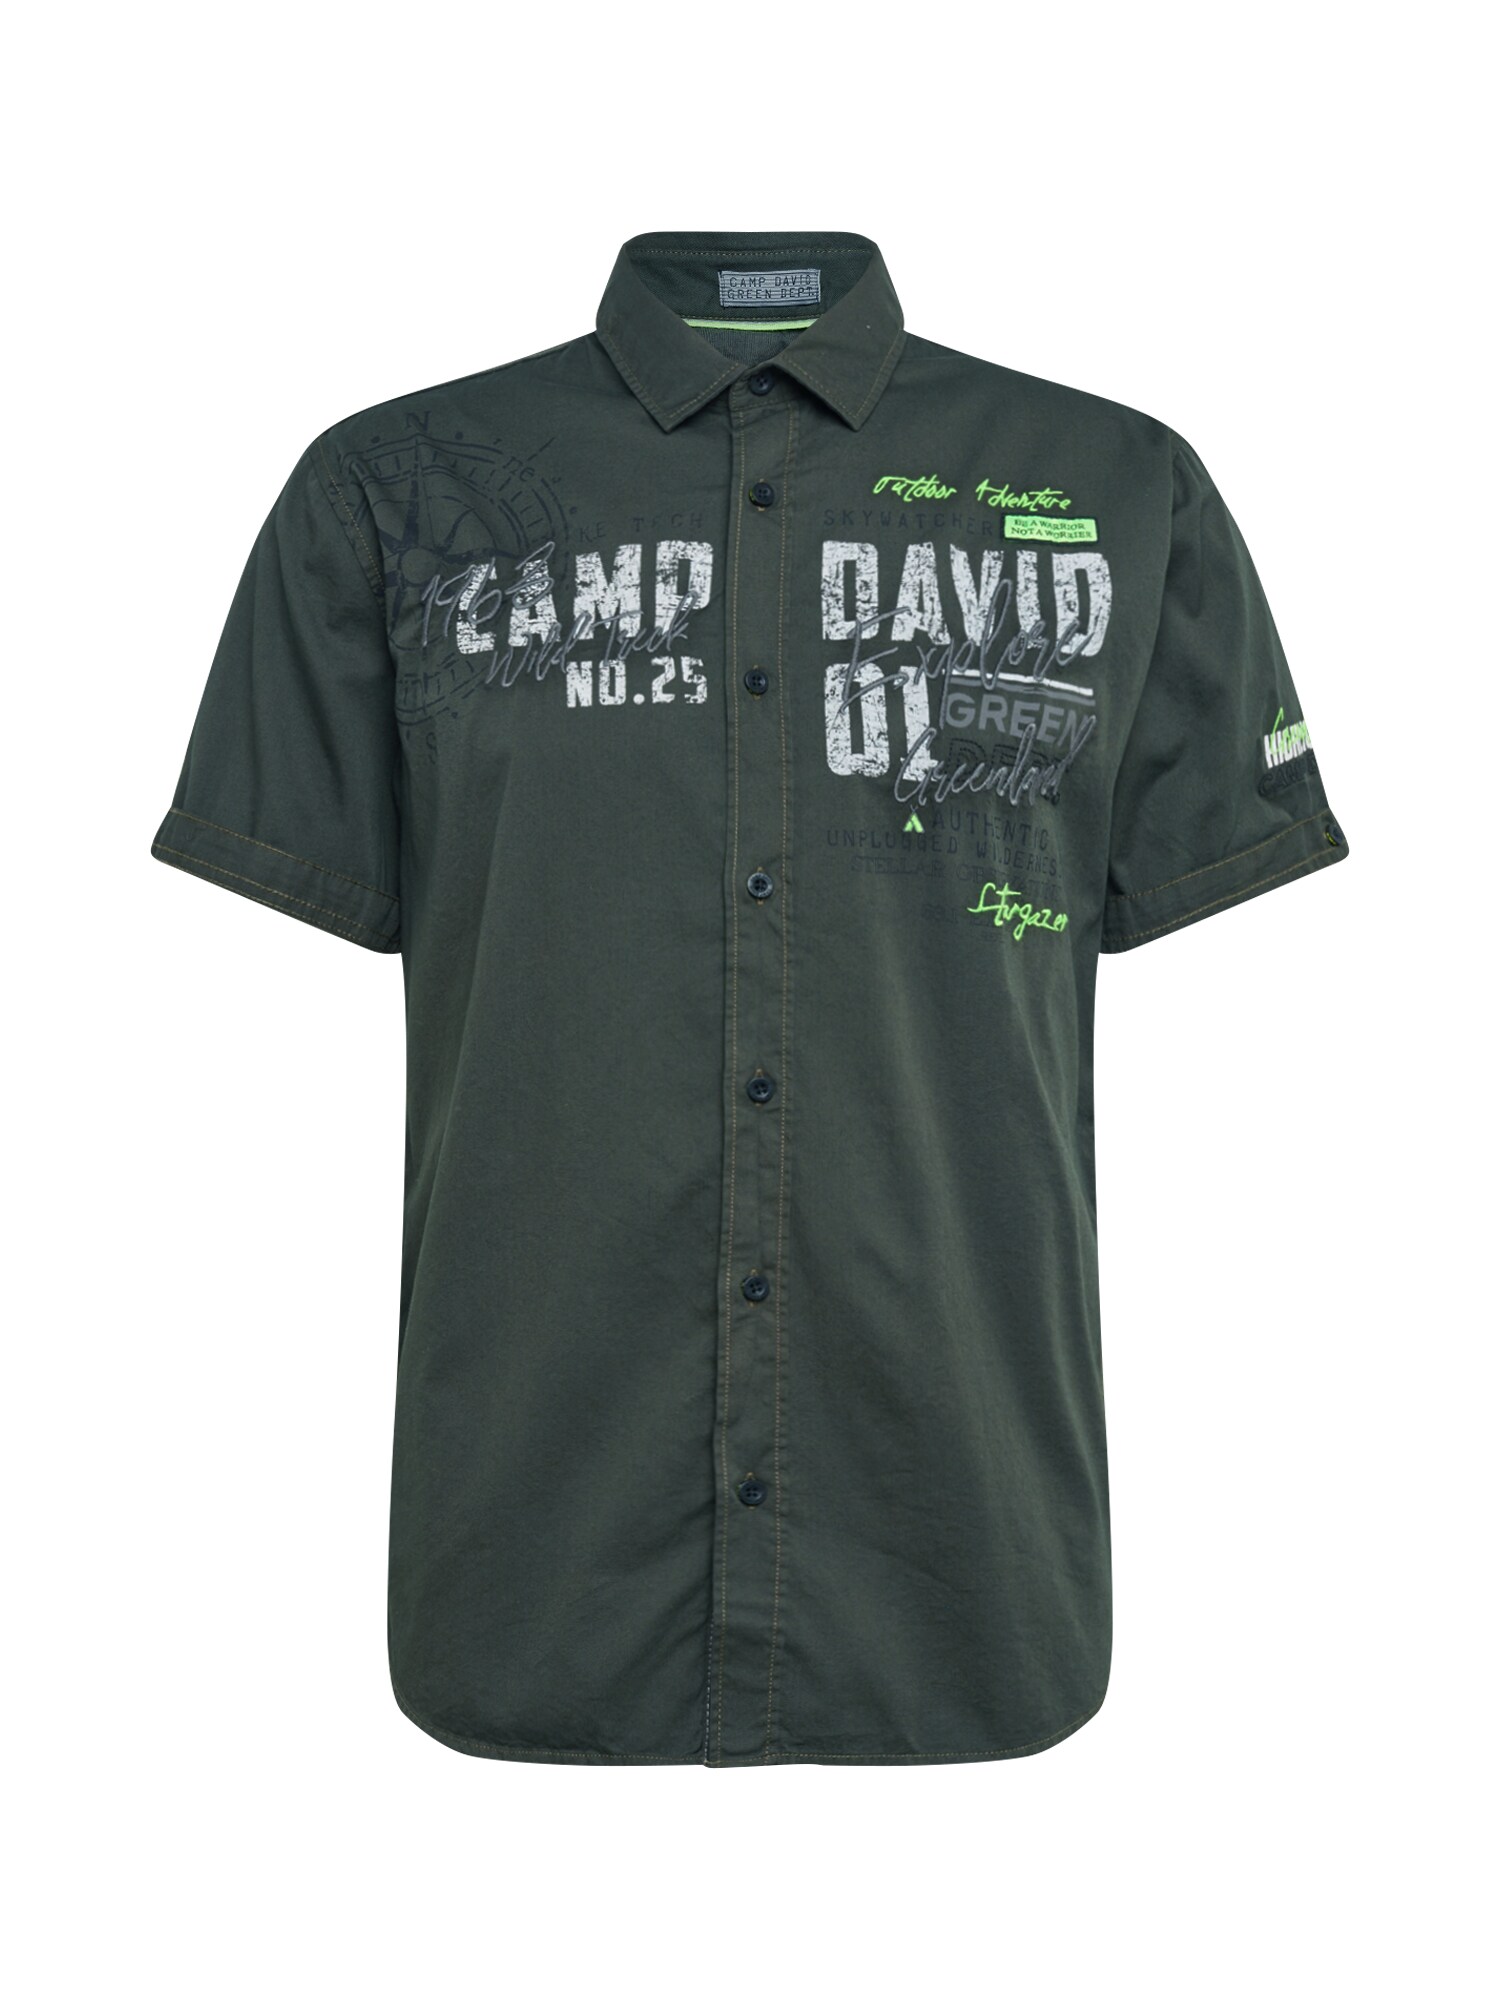 CAMP DAVID Dalykiniai marškiniai  įdegio spalva / balta / obuolių spalva